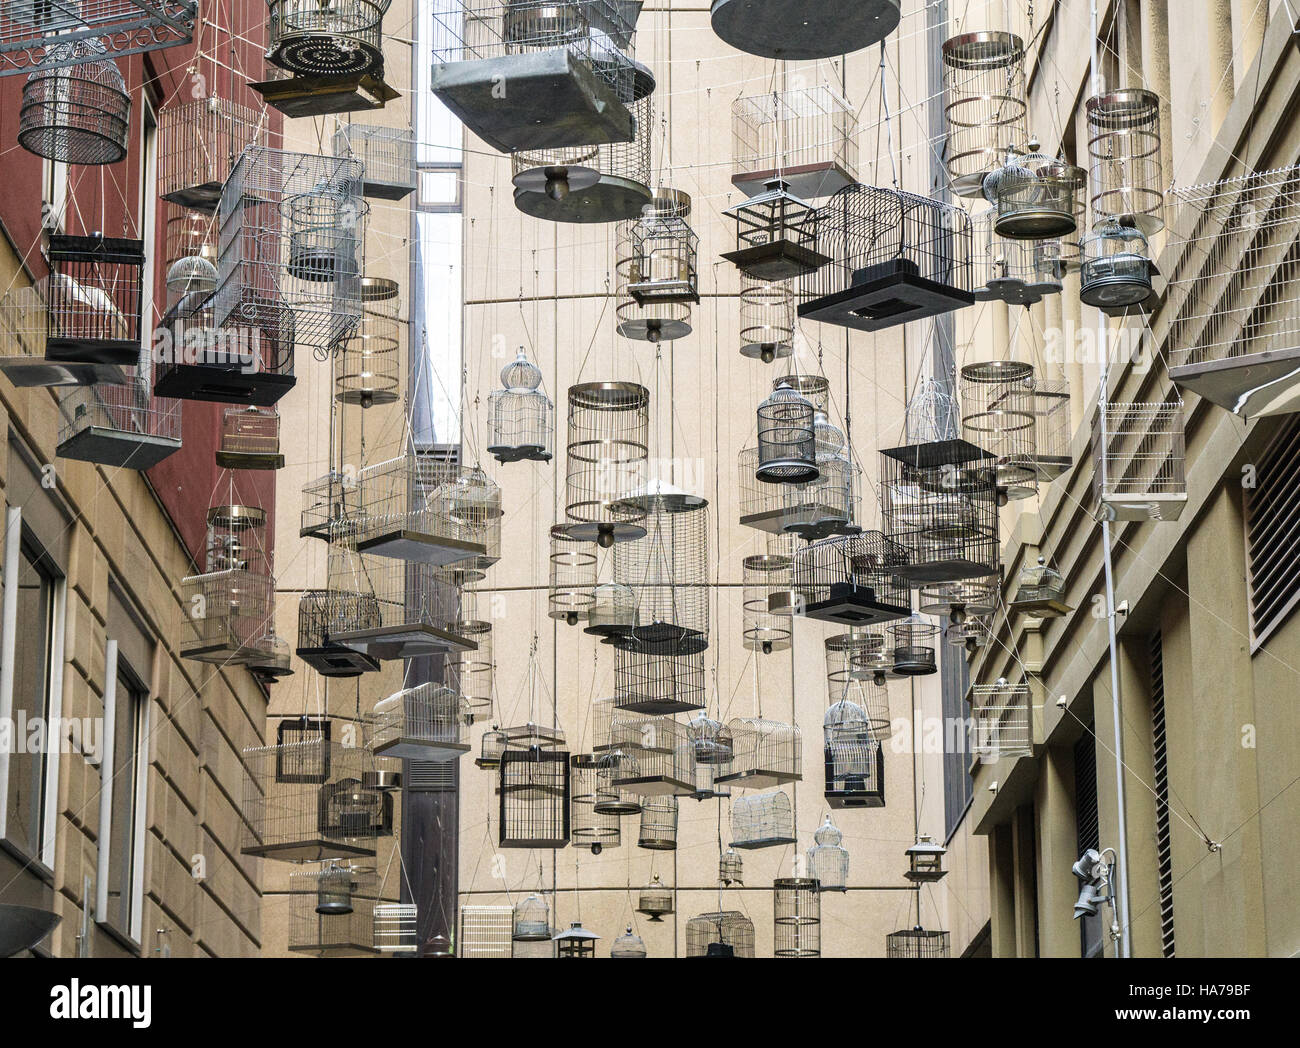 Hängende leere Vogelkäfigen in Angel Place, Sydney - eine Kunstinstallation namens "Vergessen Songs" Stockfoto